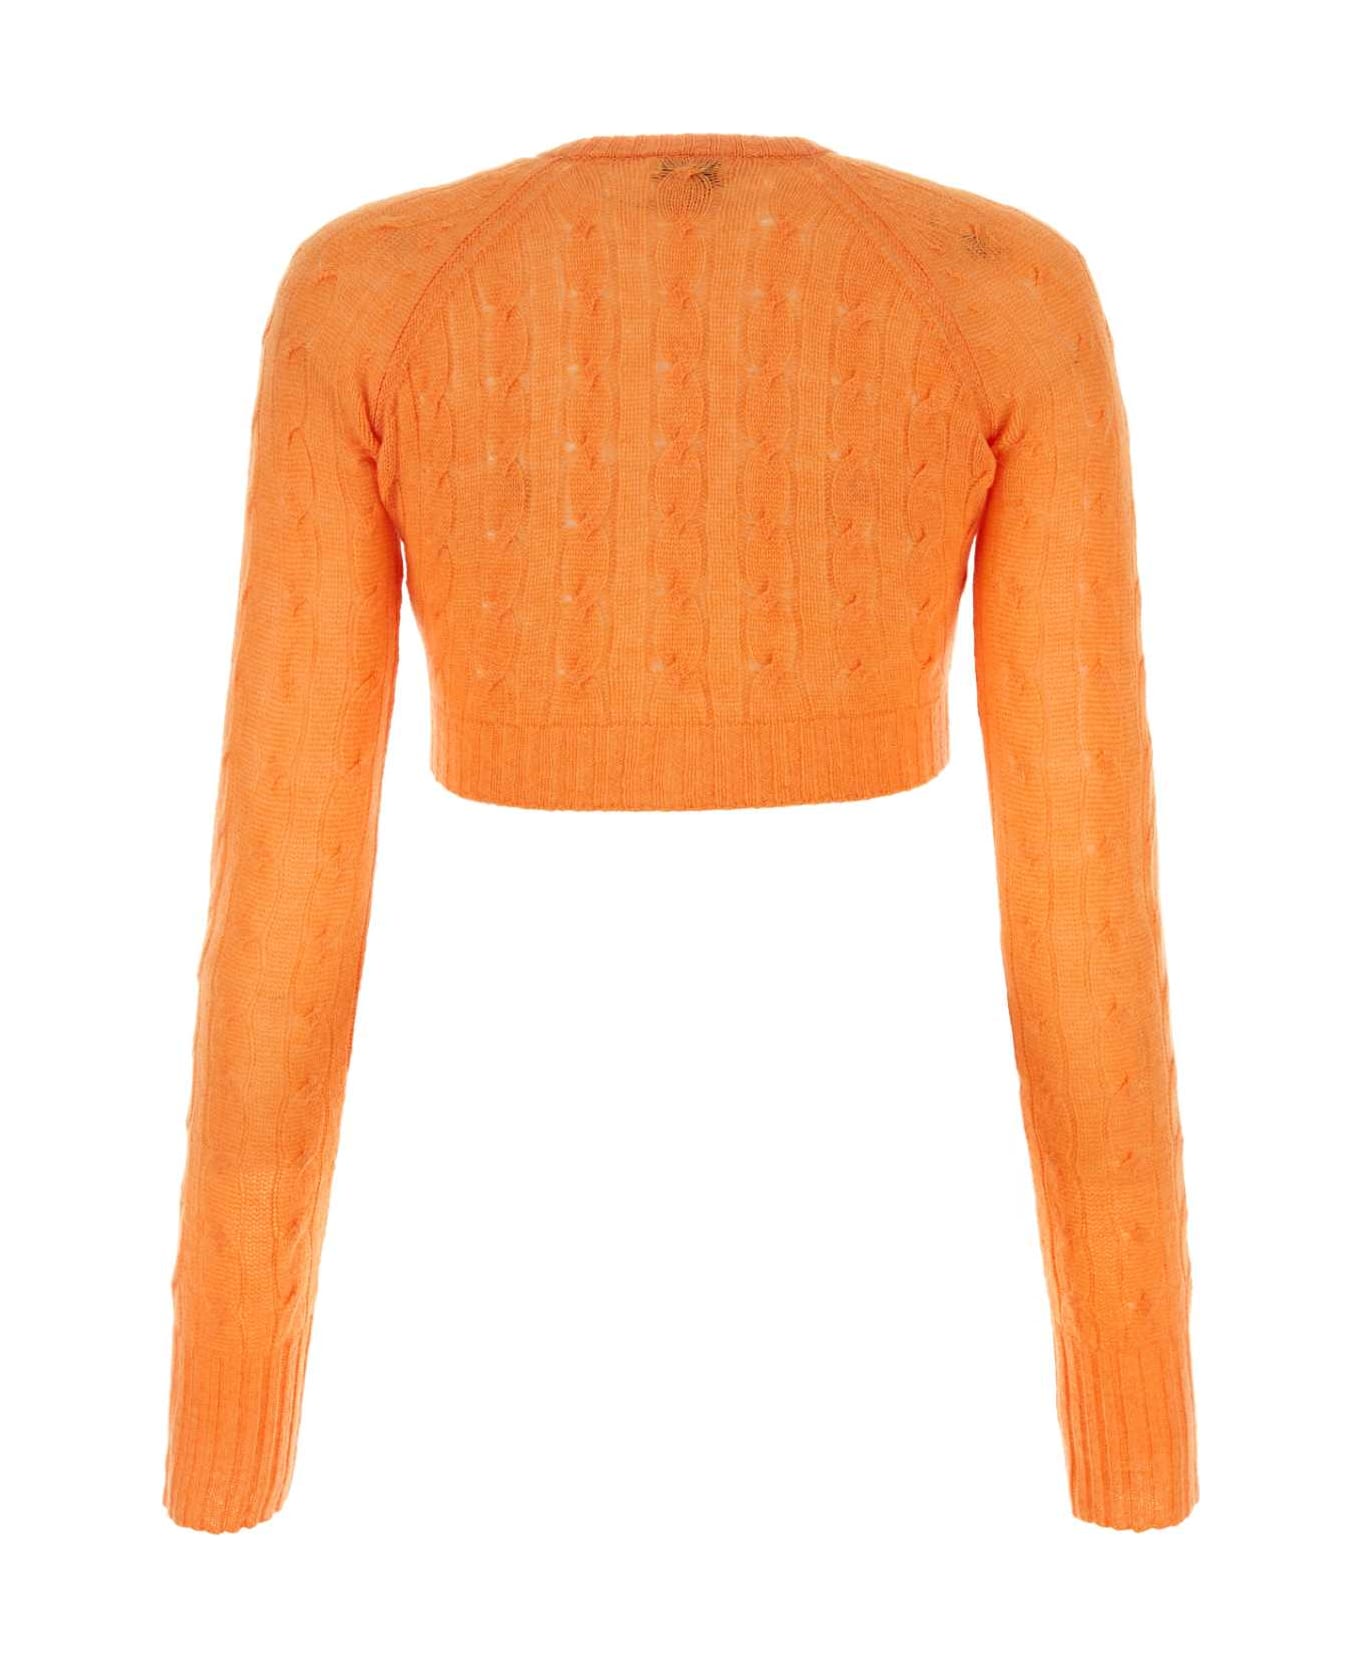 Etro Orange Cashmere Cardigan - Orange